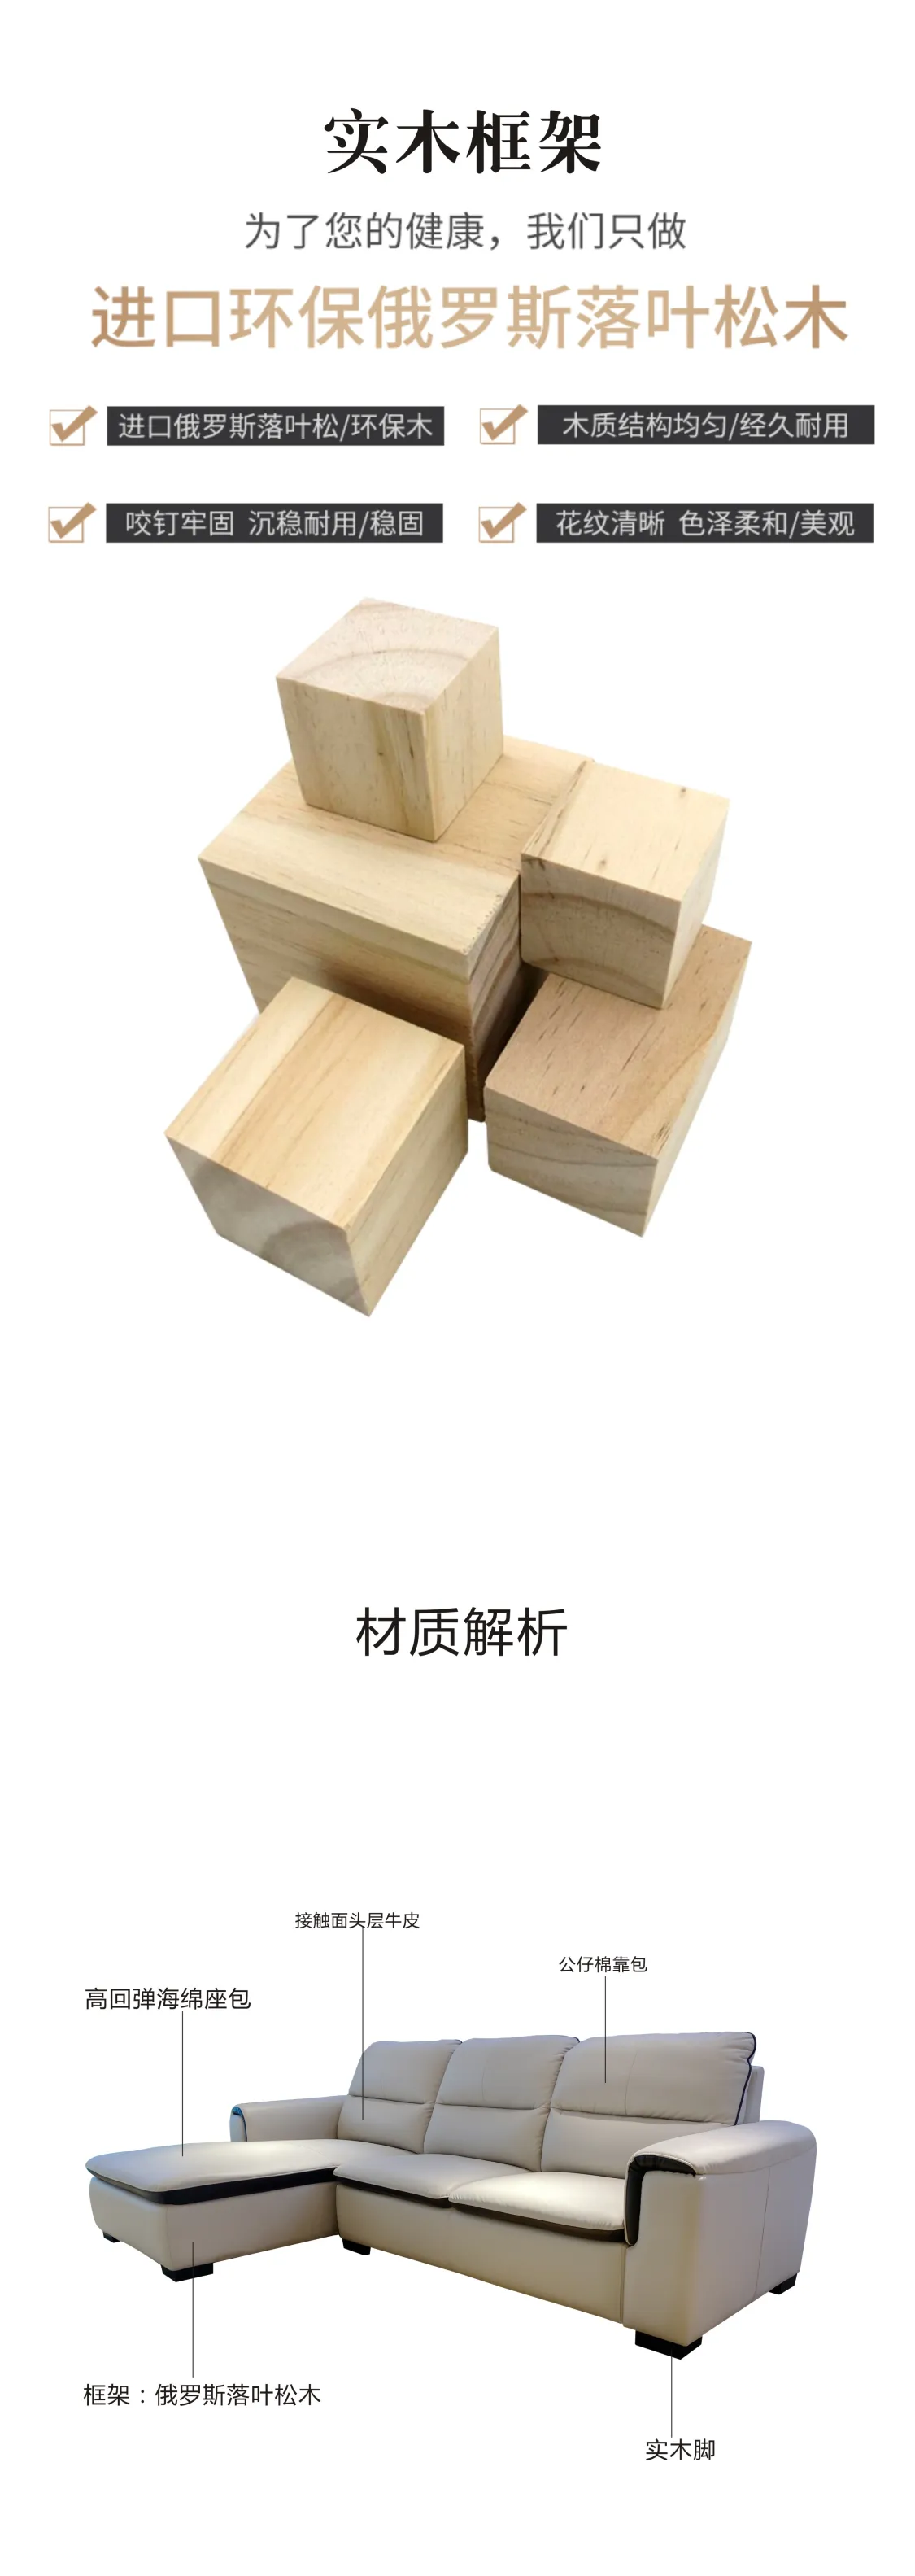 Jioon简欧 现代简奢风格 逸美系沙发 LPO-705(图6)